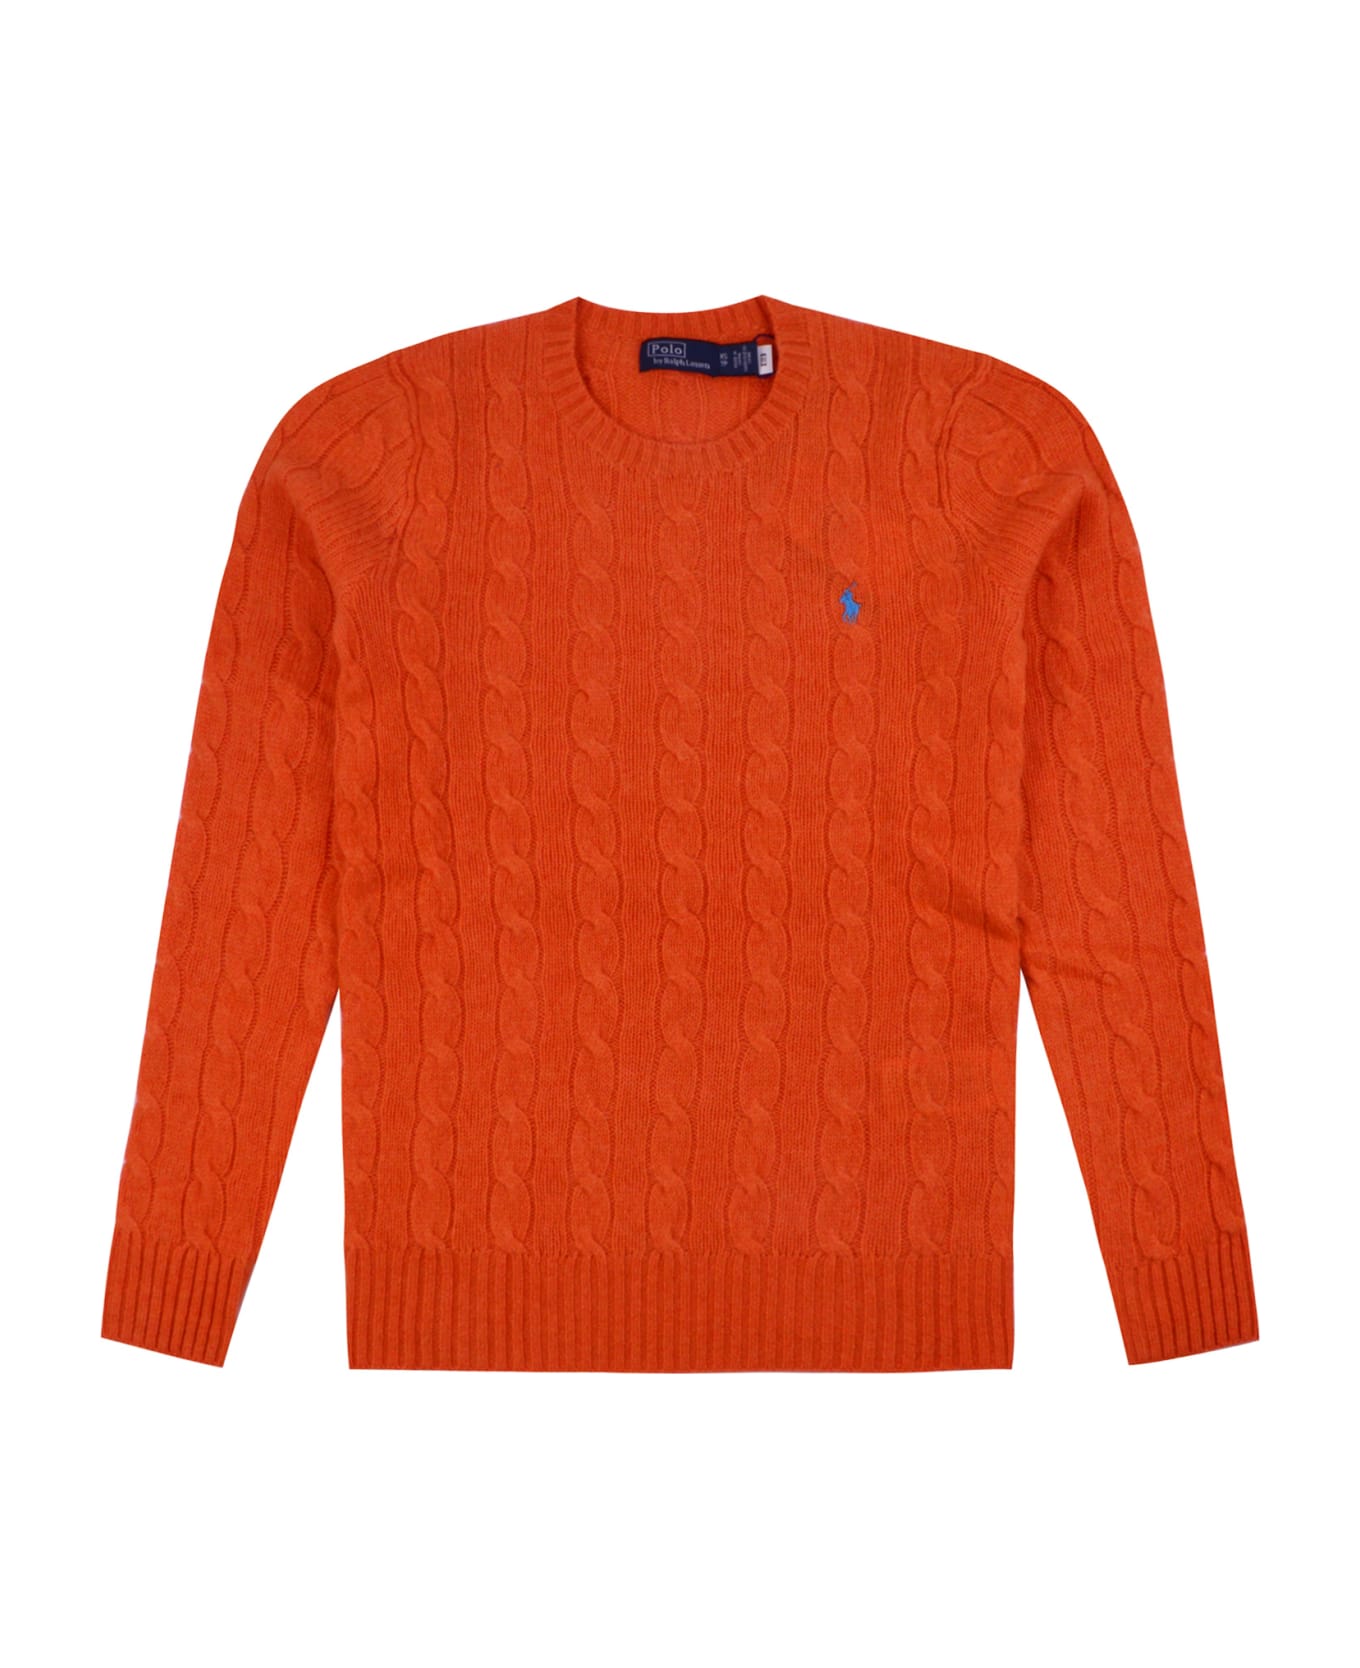 Polo Ralph Lauren Melange Orange Flannel Wool And Cashmere Braided Sweater - Orange